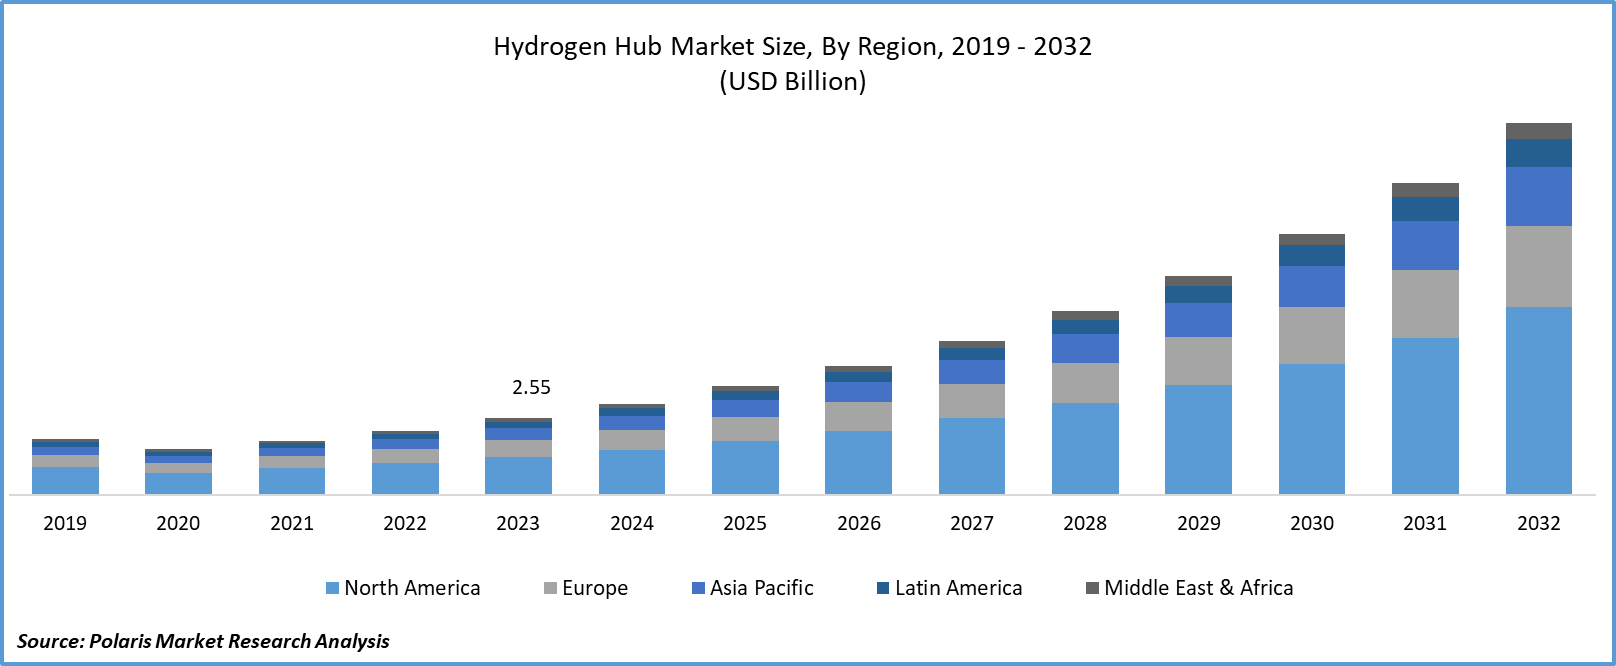 Hydrogen Hubs Market Size